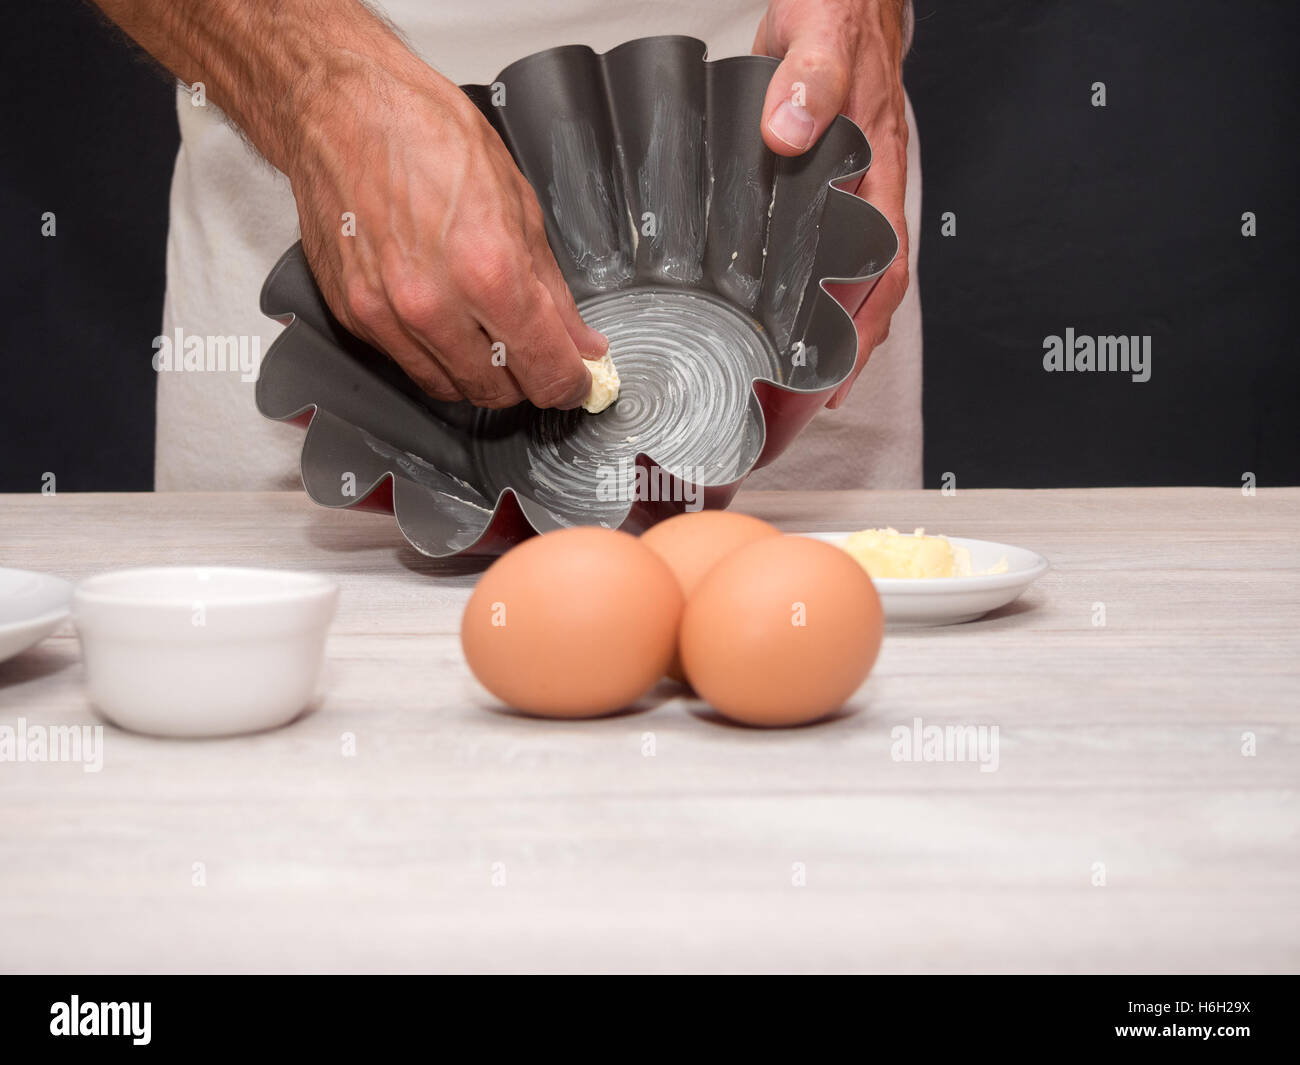 Greasing pan with butter. Making Yogurt Cake. Stock Photo